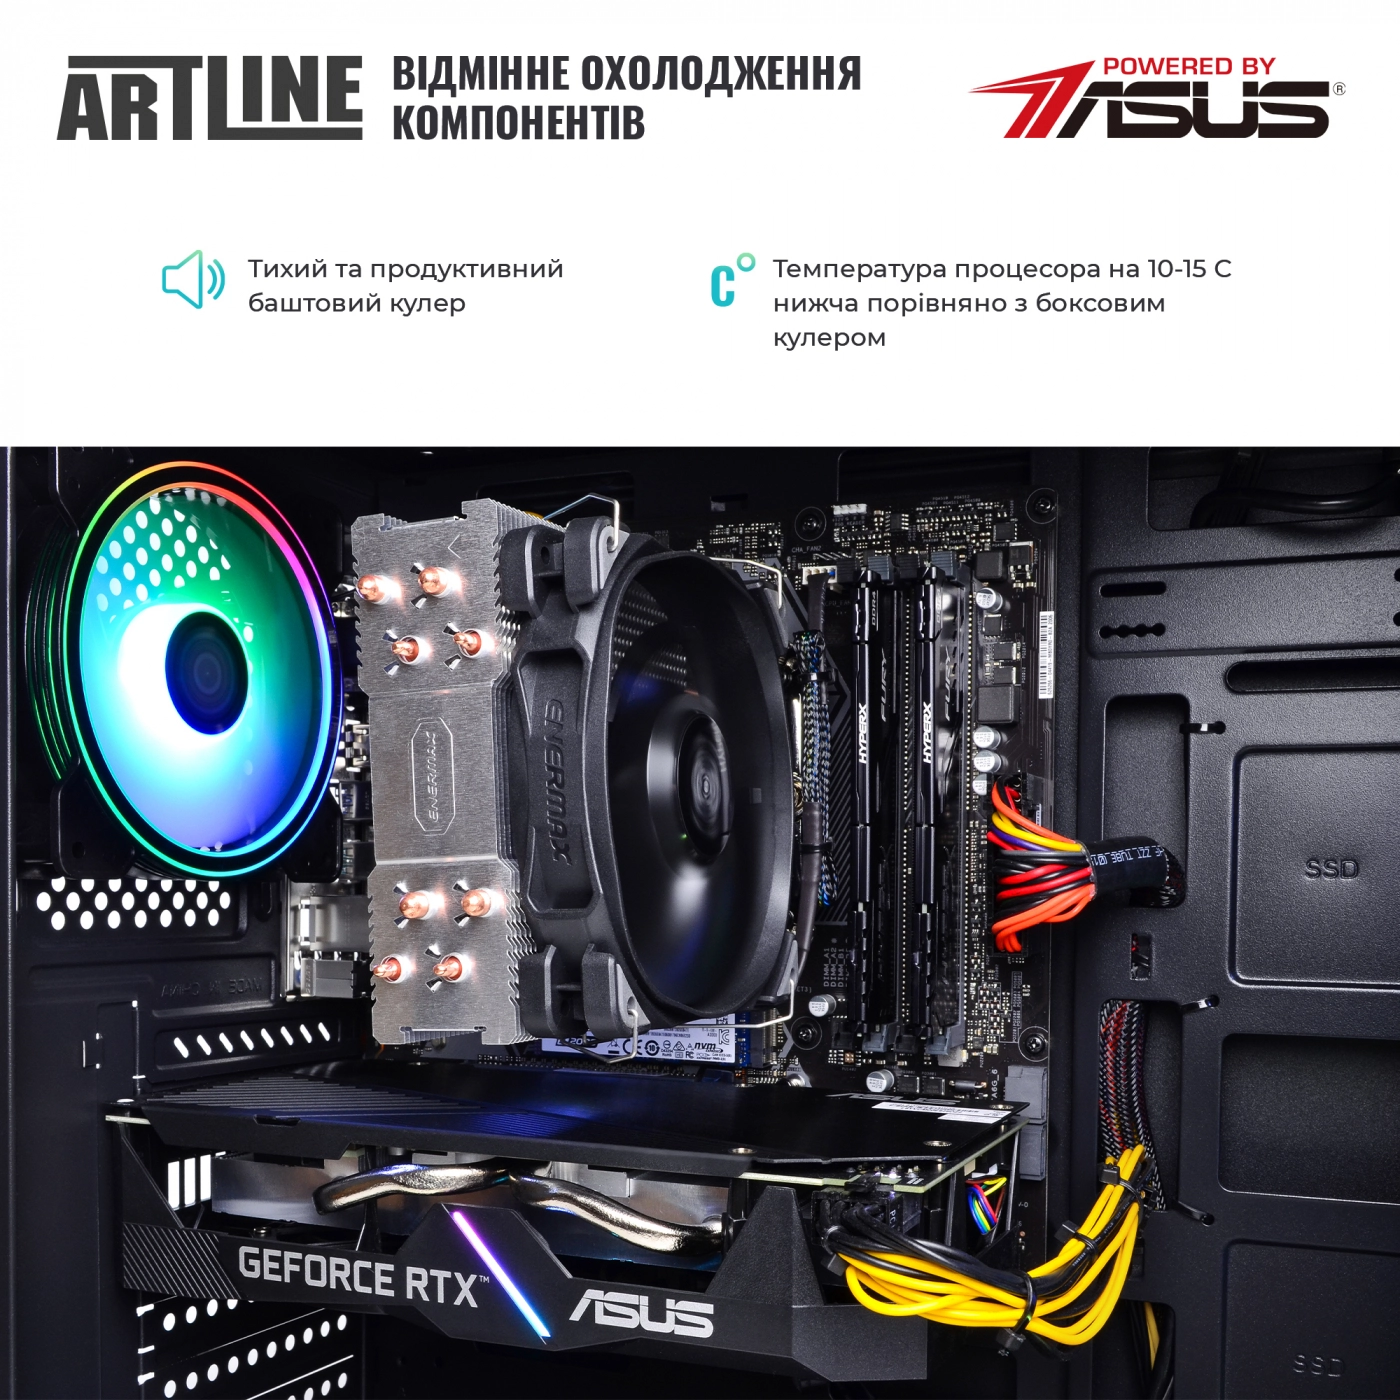 Купить Компьютер ARTLINE Gaming X77v52 - фото 8